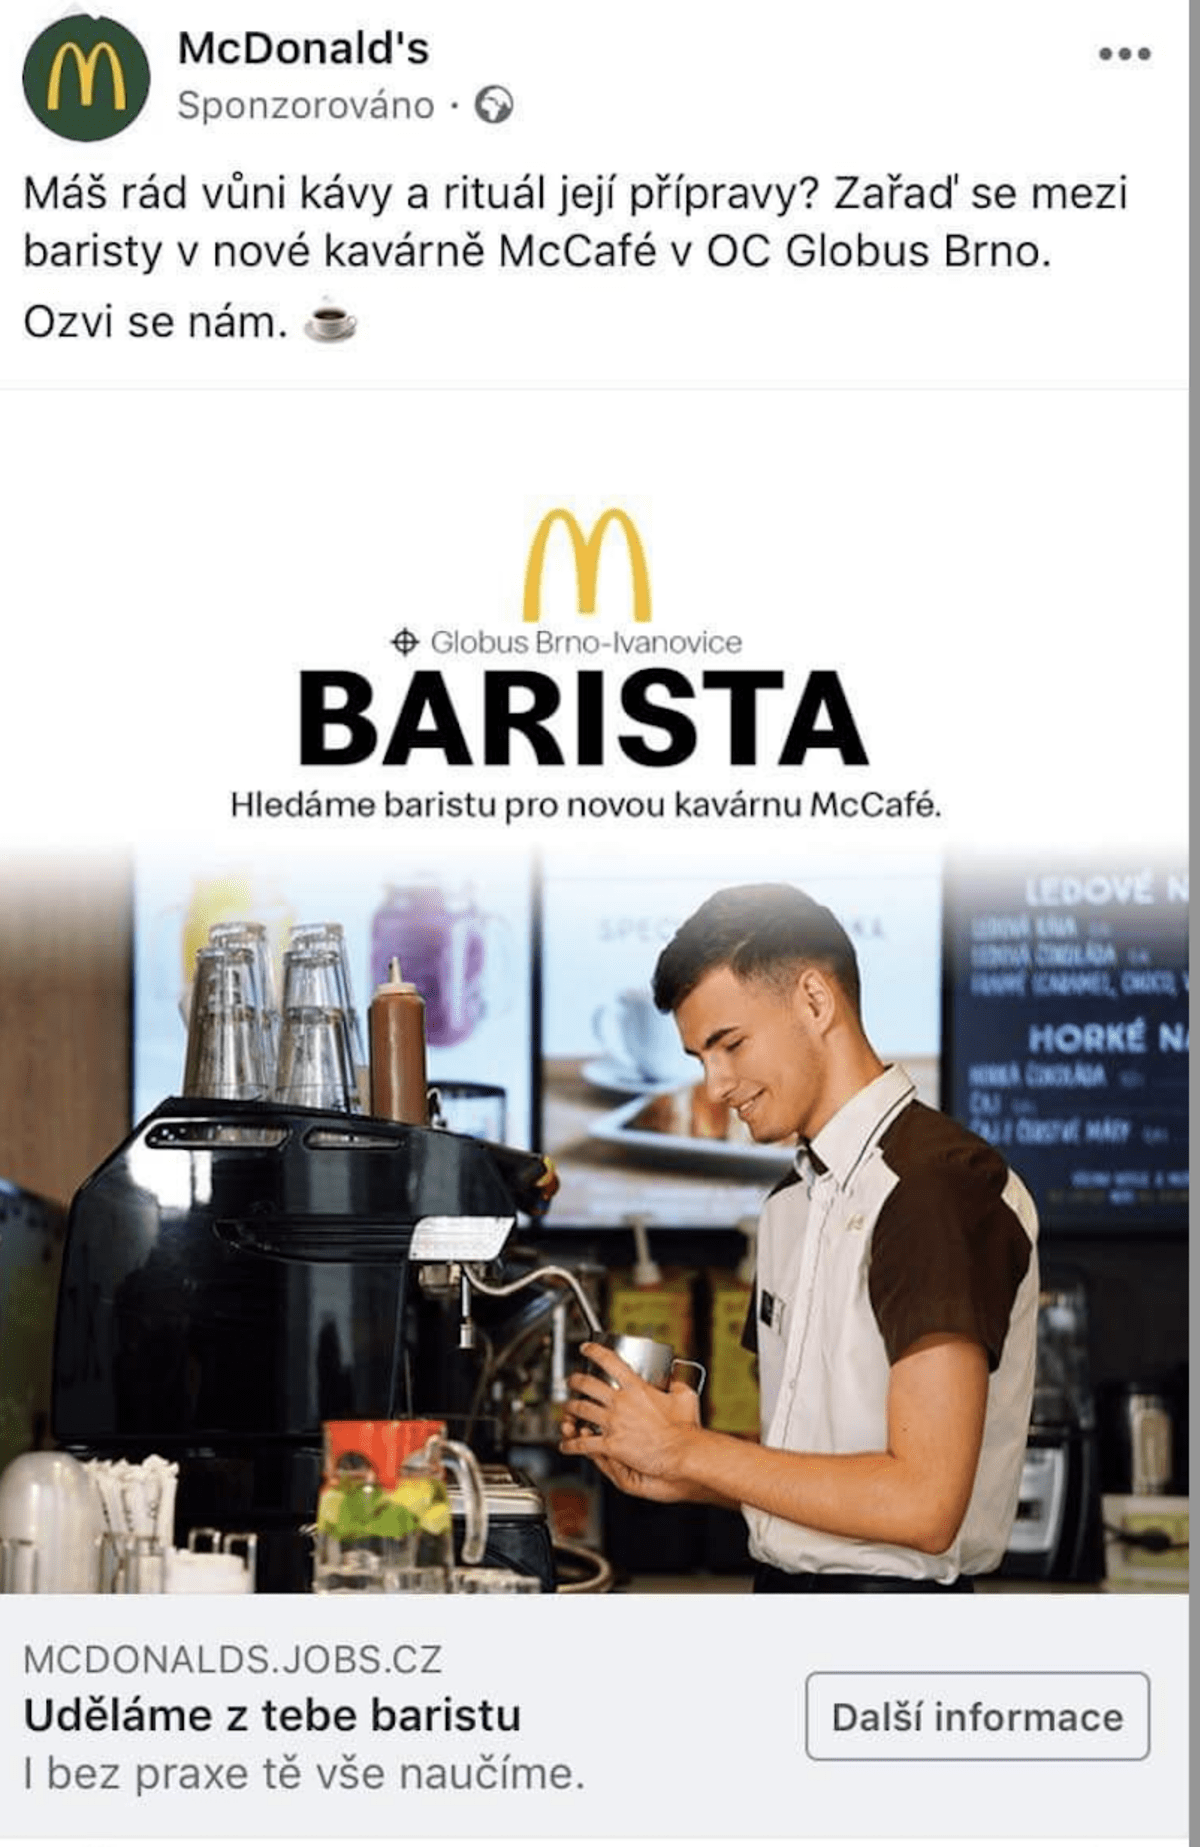 Artem se objevil i v reklamě McDonaldu